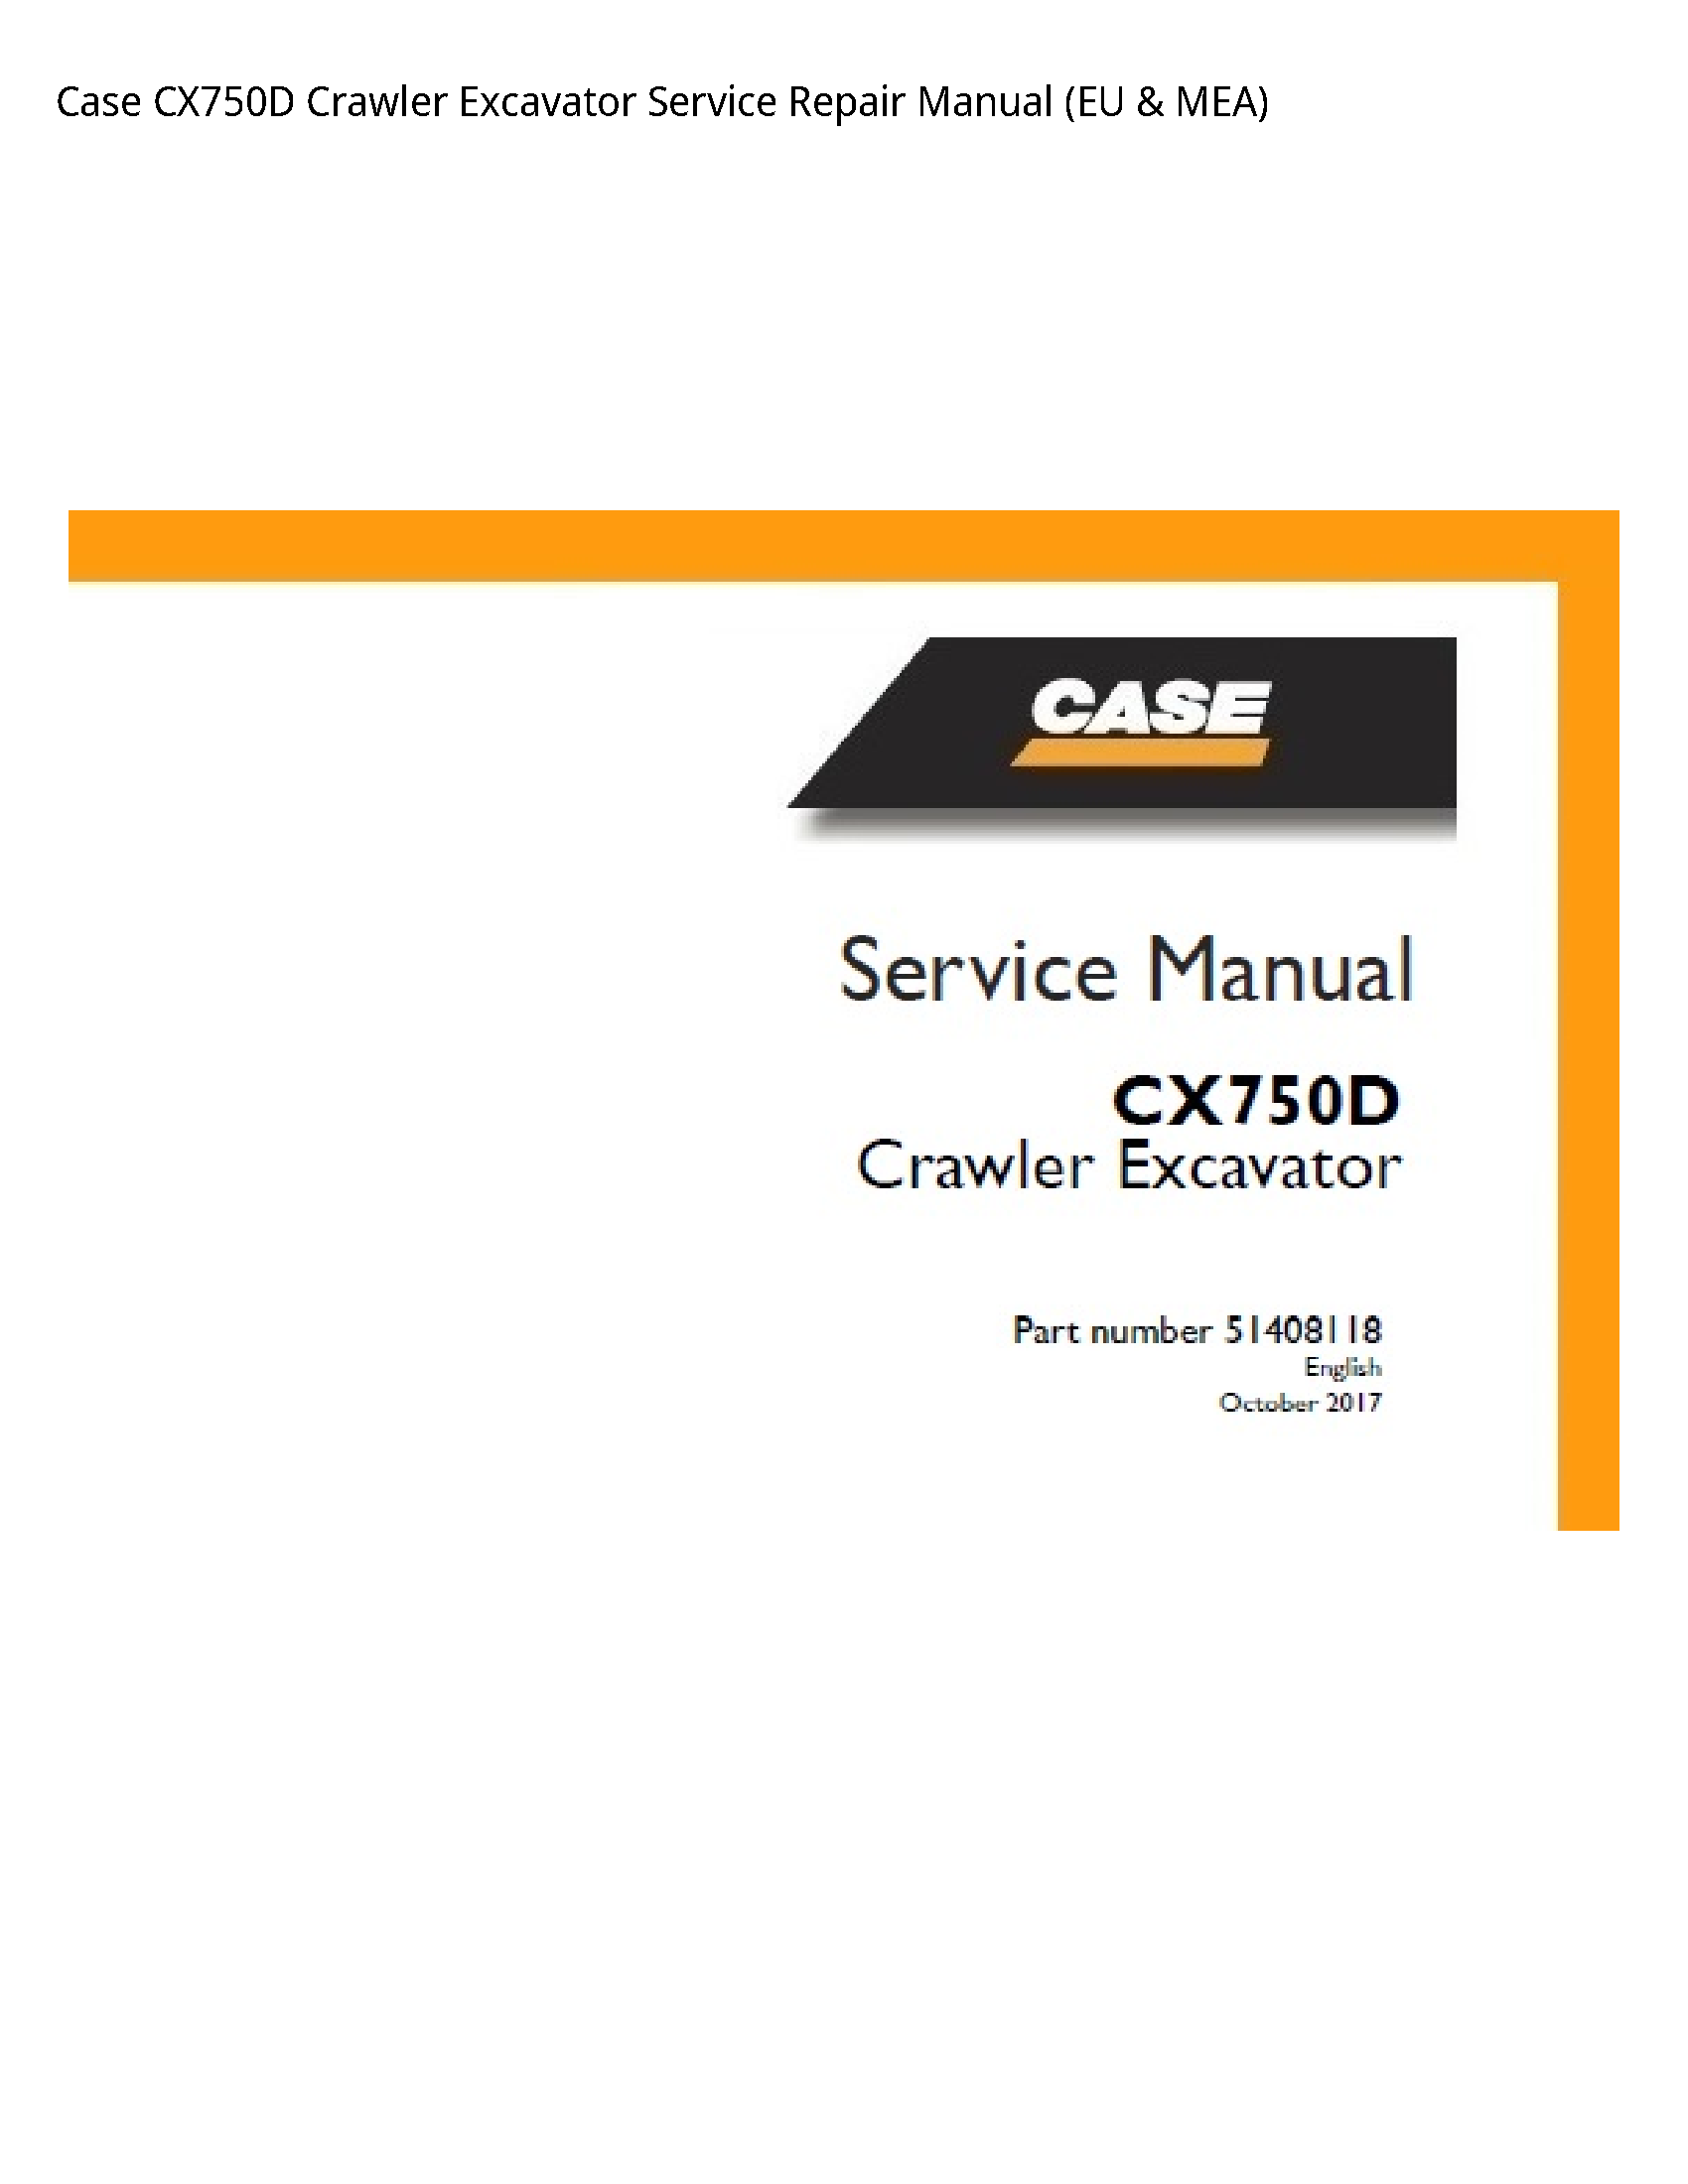 Case/Case IH CX750D Crawler Excavator manual